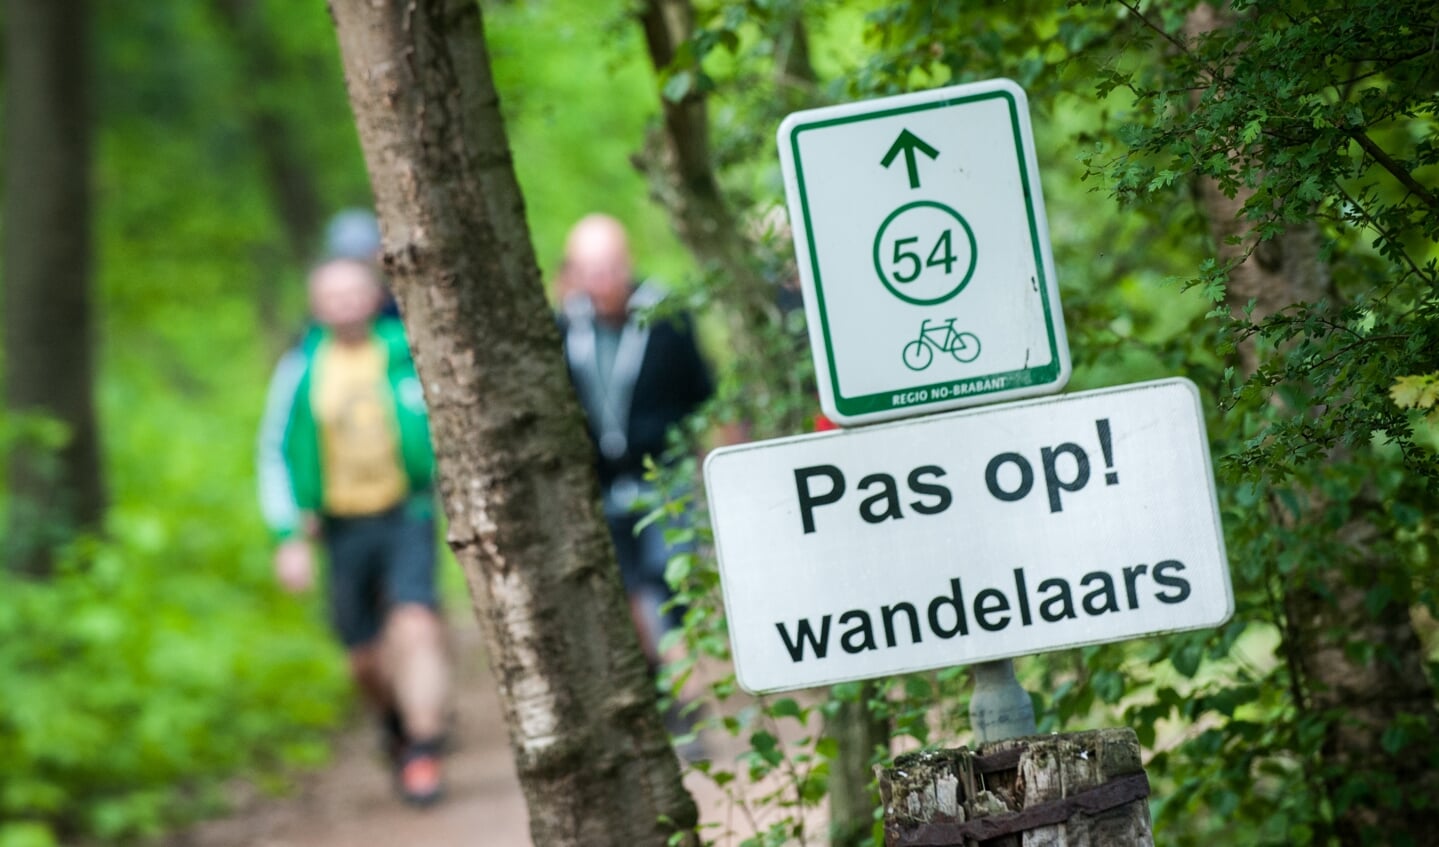 Wandeltocht '80 Land van Cuijk' houdt op met bestaan, tot verdriet van de organisatie en vele wandelaars. (Foto: Arjan Broekmans).